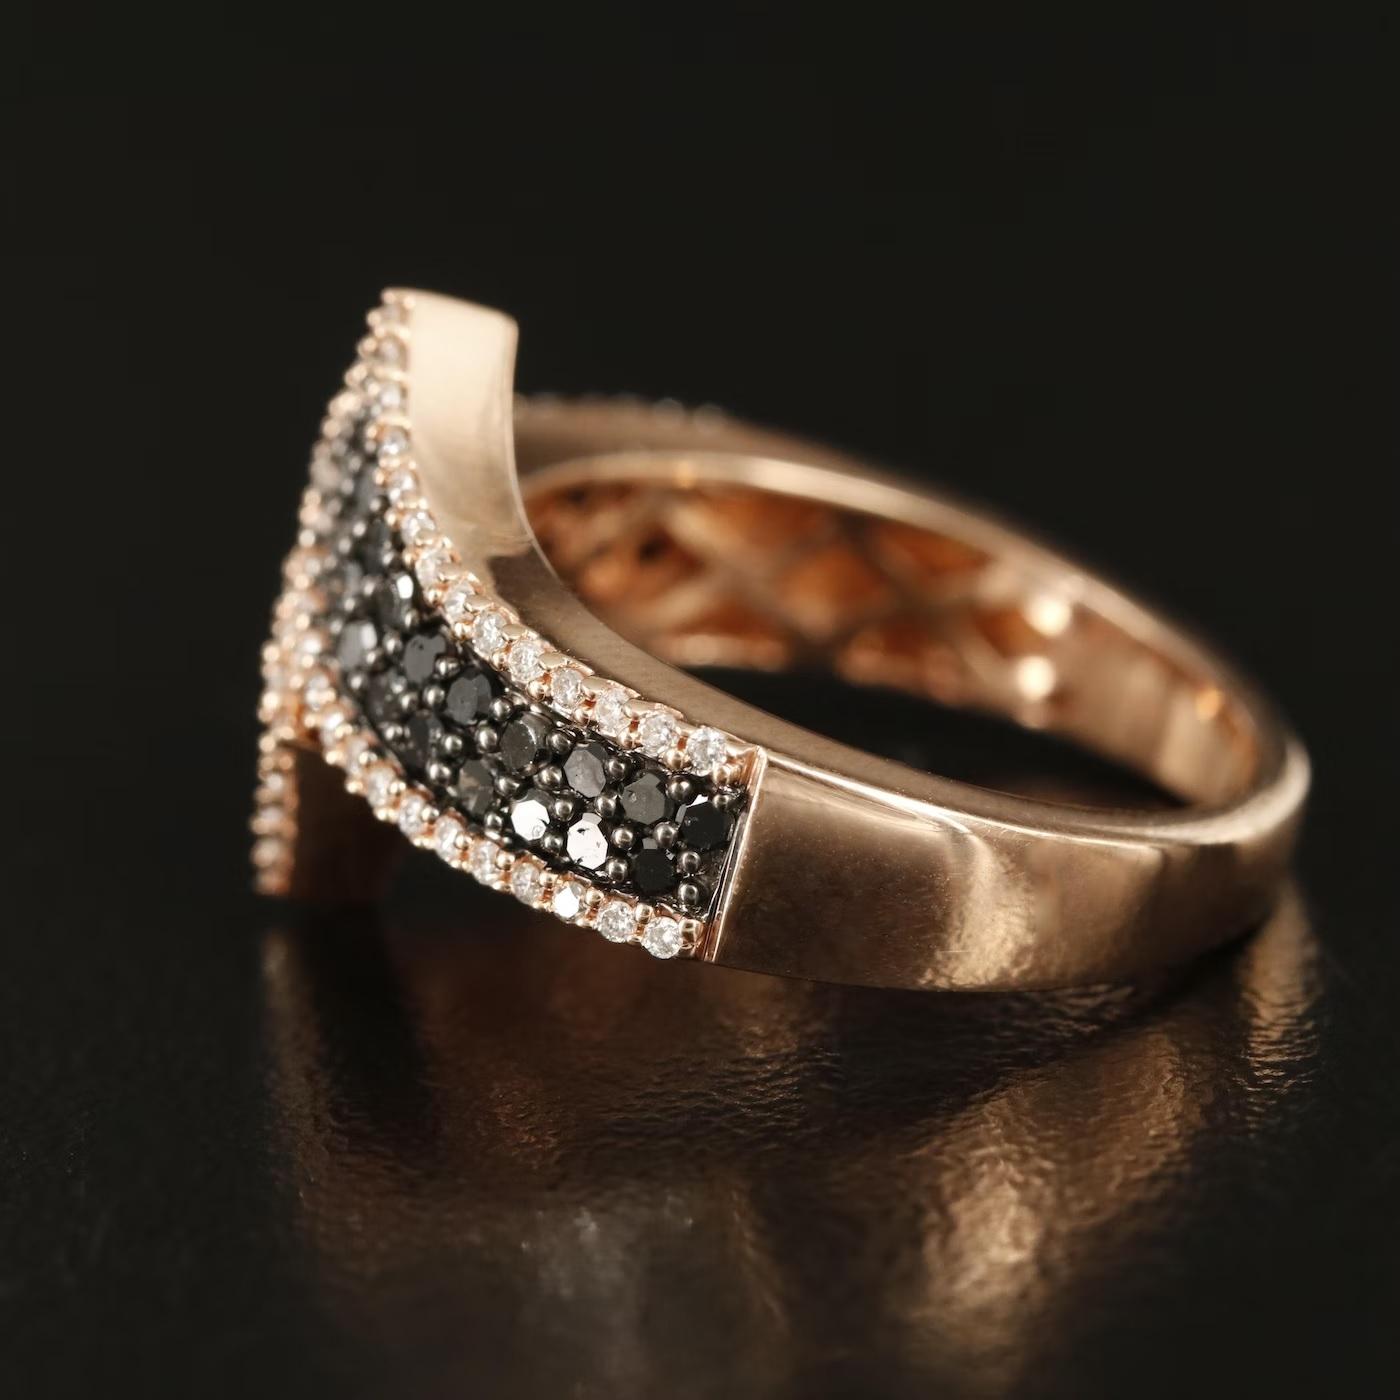 Round Cut $4450 / New / Karen Marchesa Designer Bypass Ring / 1.05 CT Diamond / 14K Gold